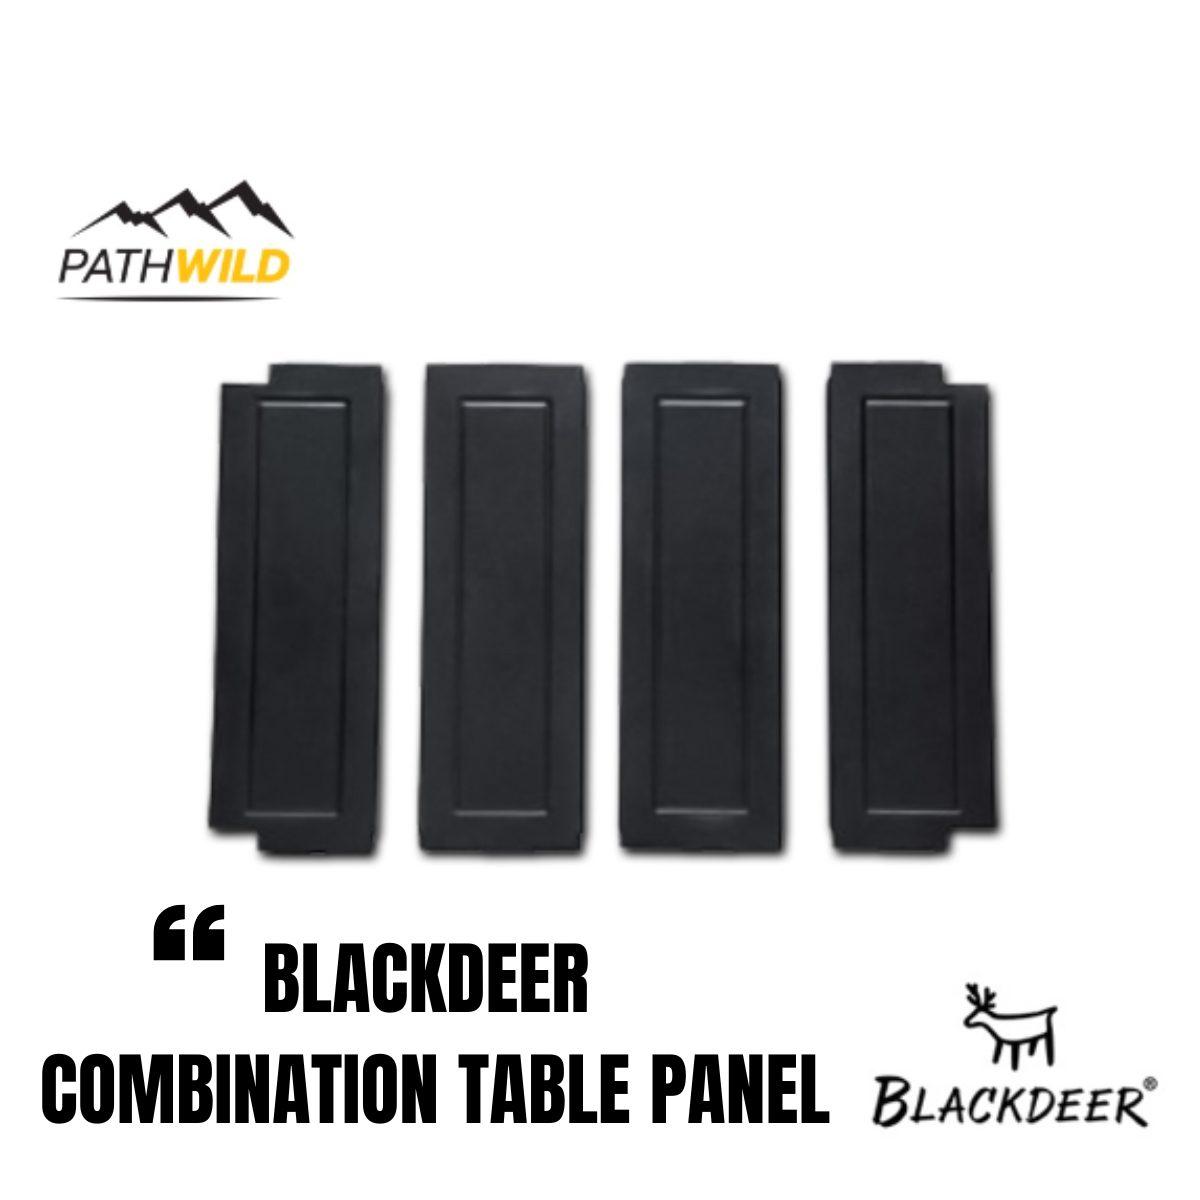 แผ่นพับสำหรับเสริมพื้นที่ของโต๊ะ BLACKDEER COMBINATION TABLE PANEL